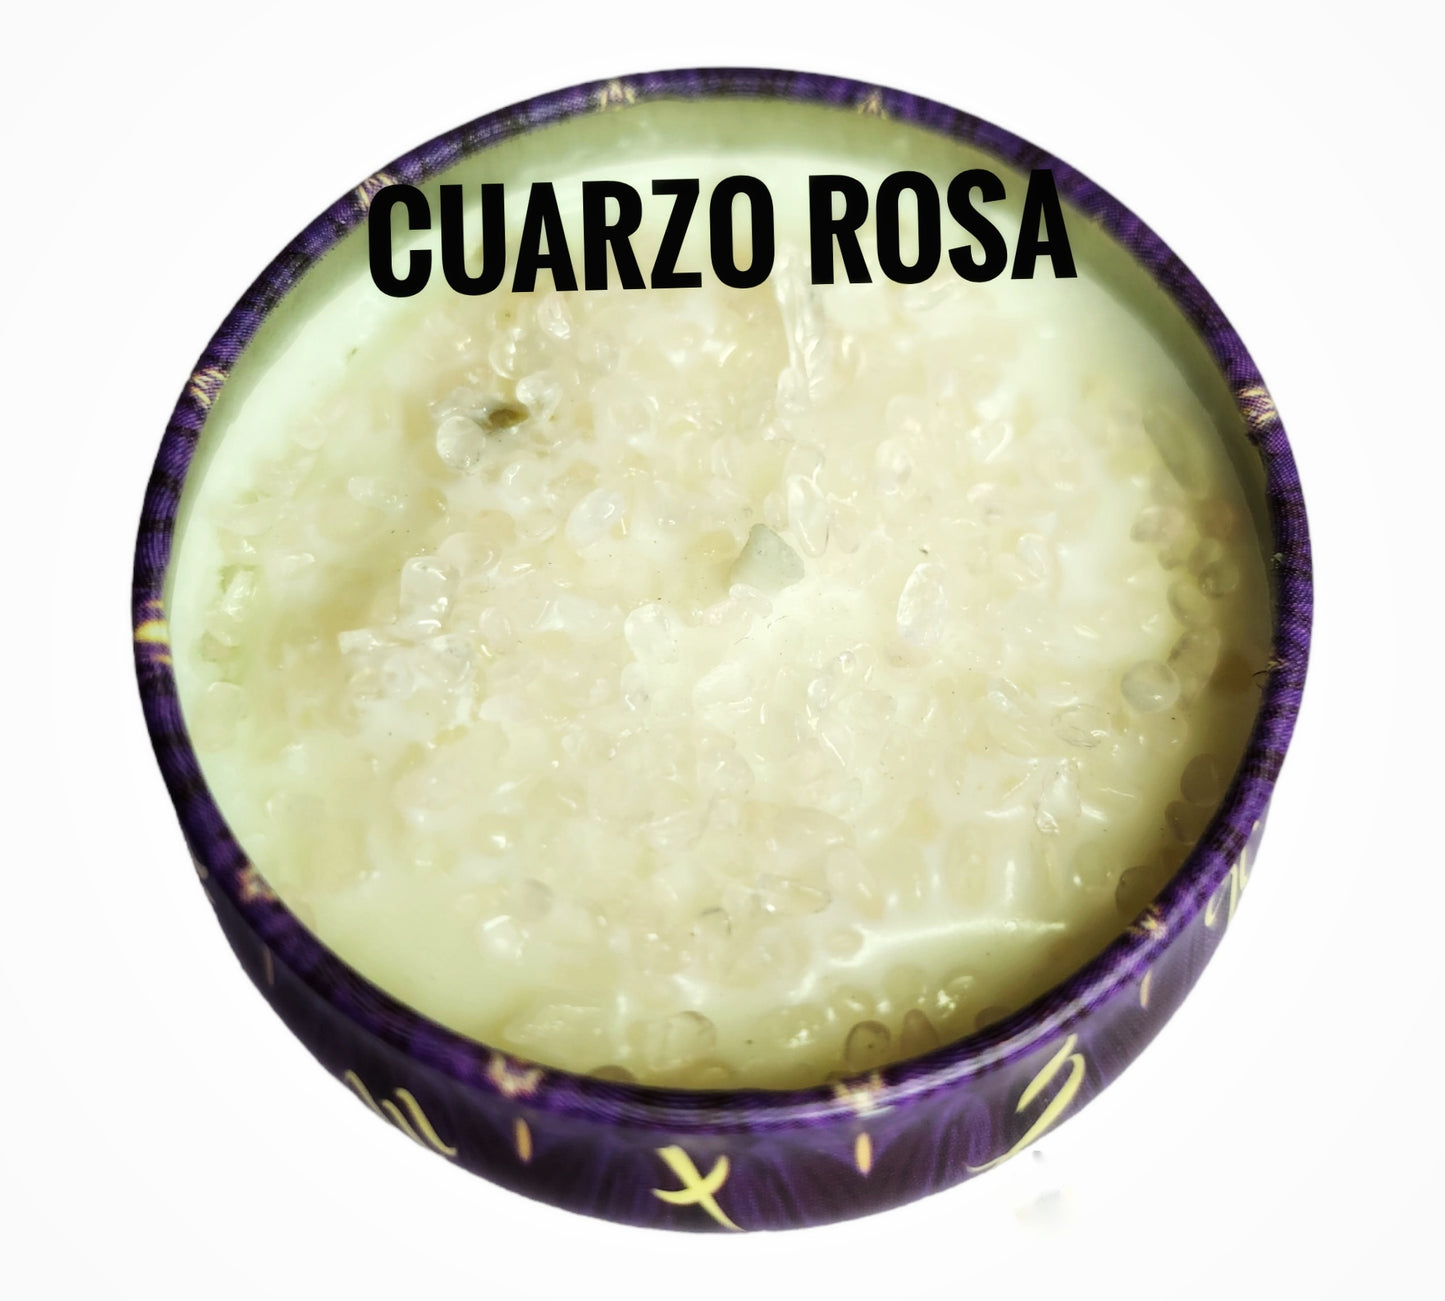 Cuarzo Rosa (Amor Propio)